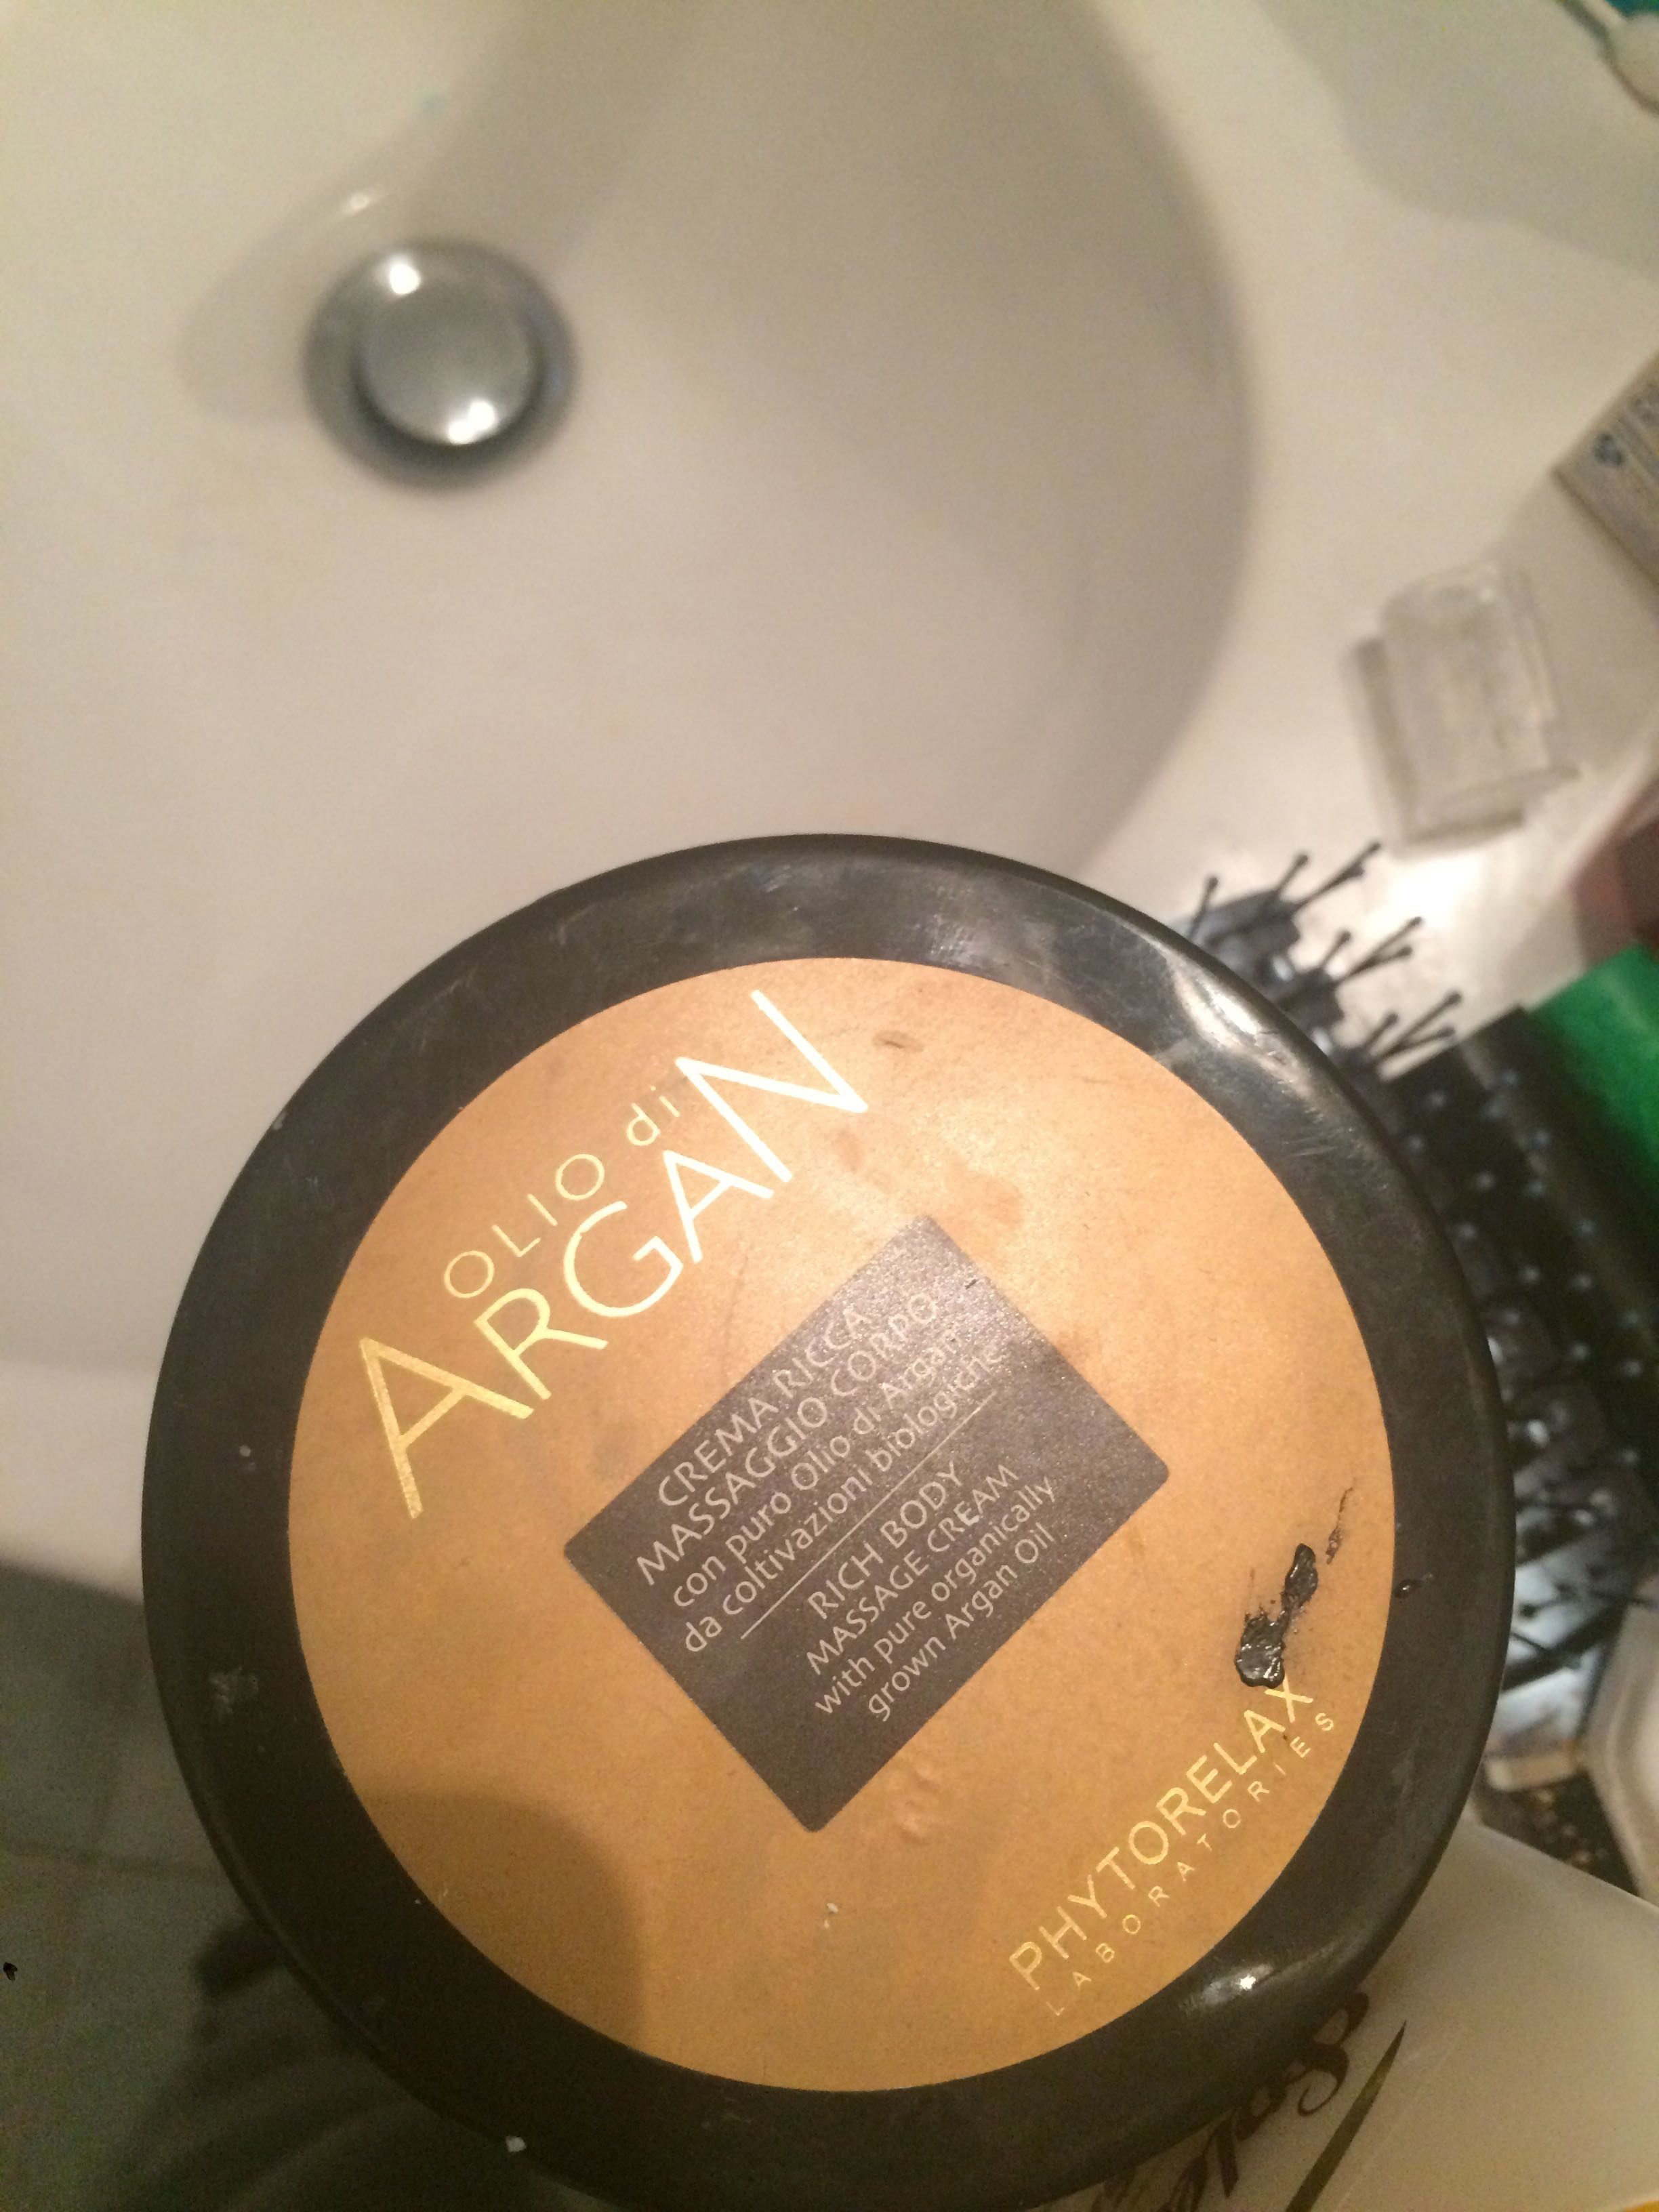 Olio di argan - Product - fr